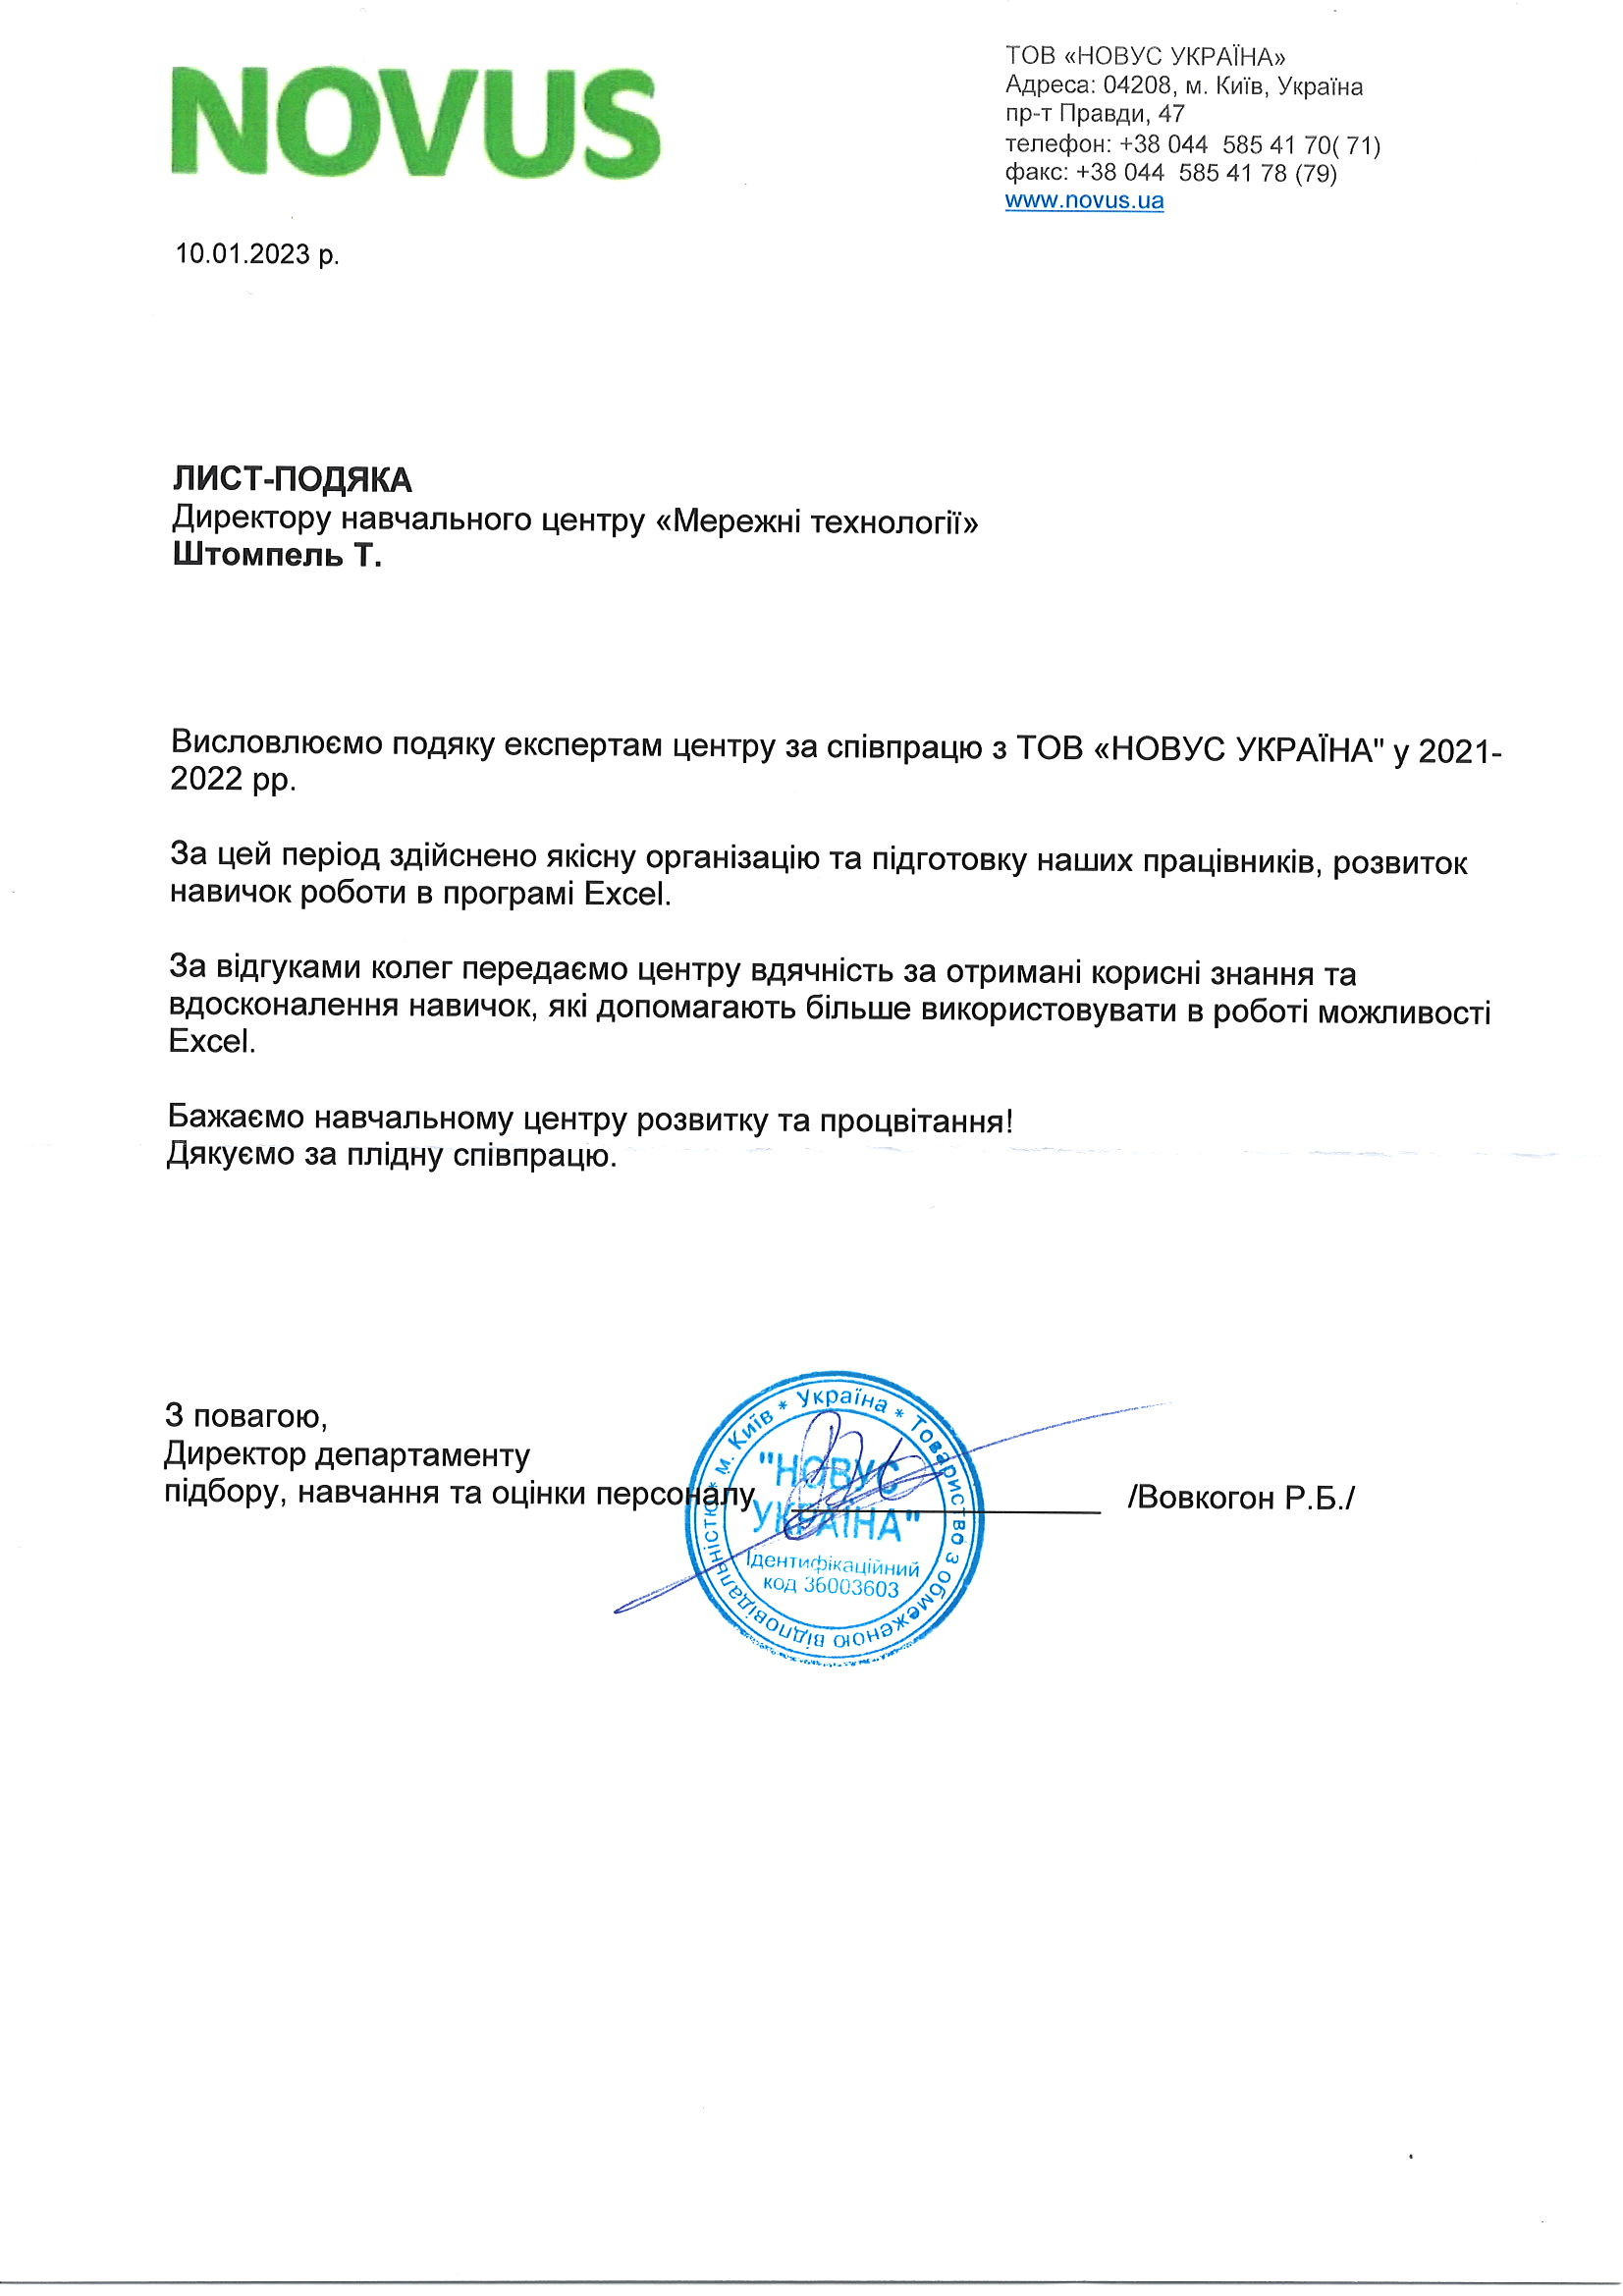 Відгук компанії ТОВ «Новус Україна» про НЦ Мережні Технології, 2023 р.